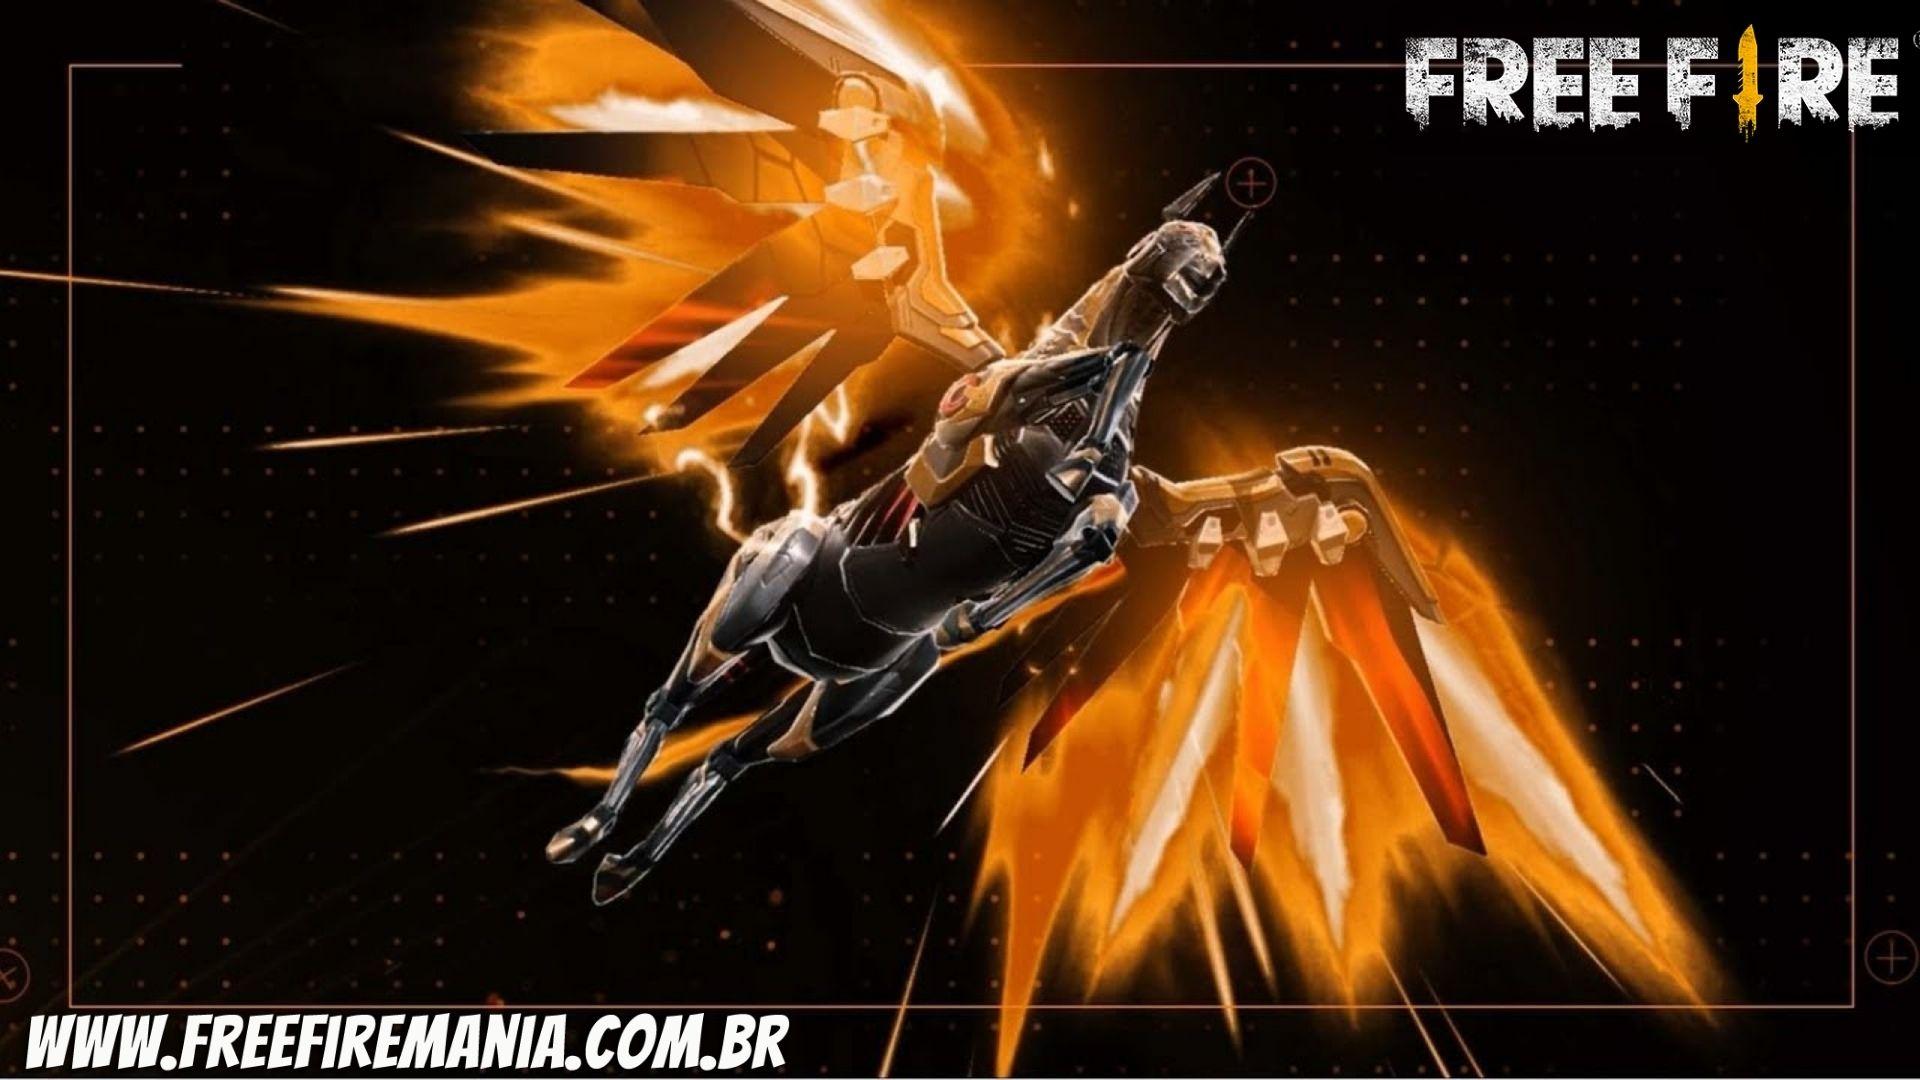 Free Fire recebe animação inédita: Voando a Cavalo